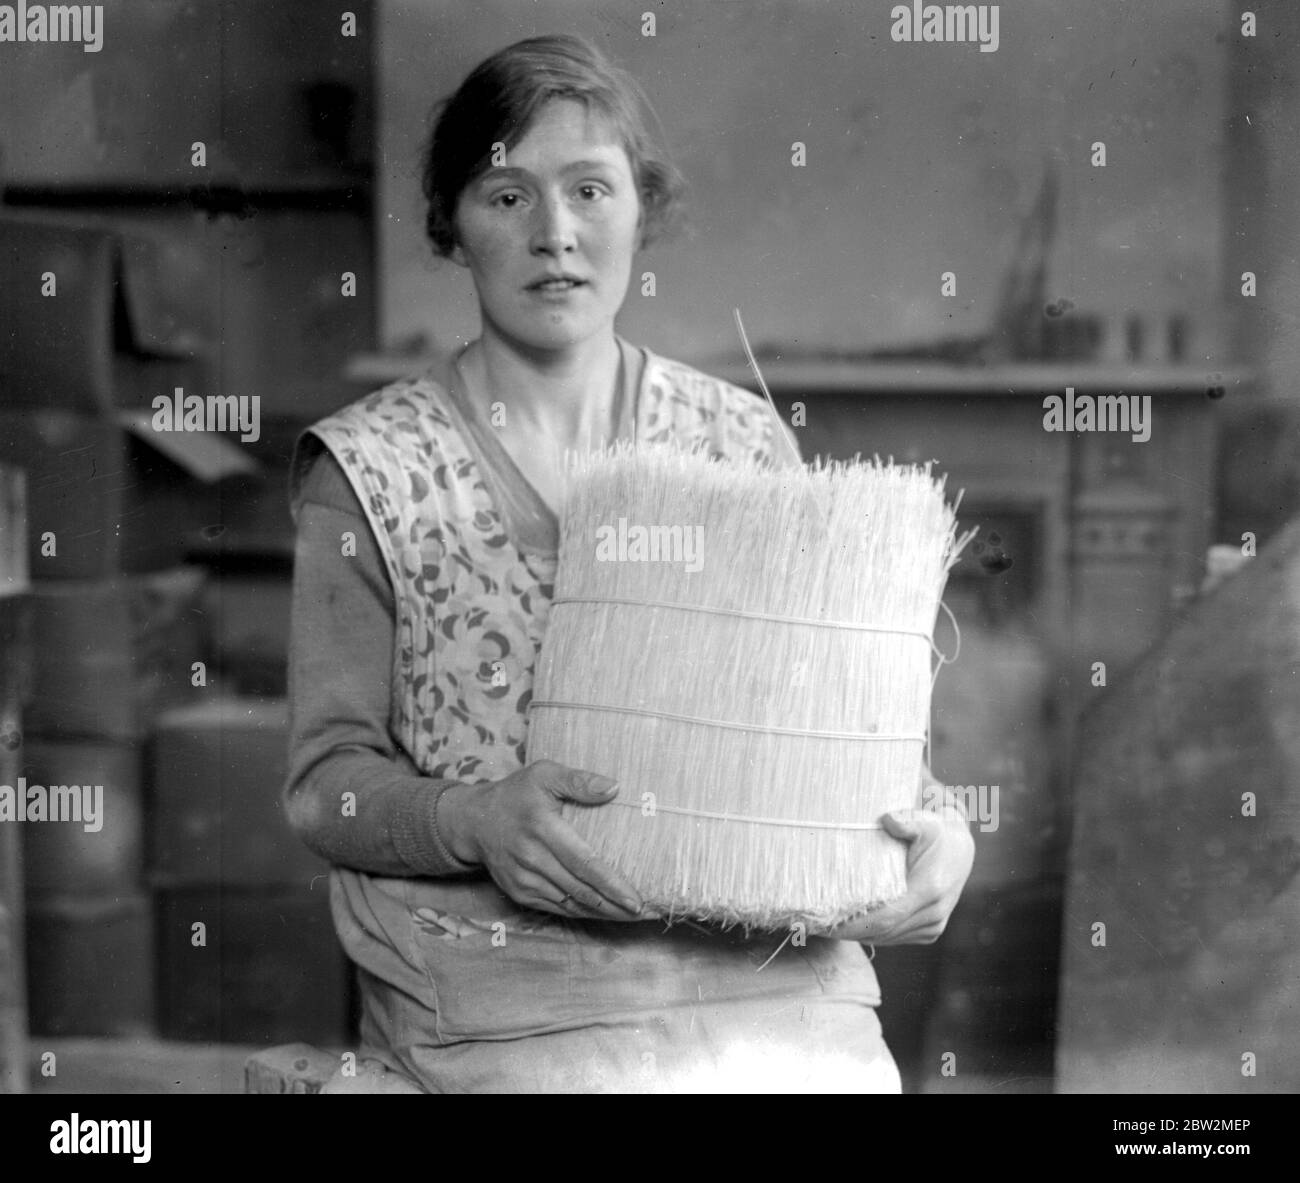 Taglio a spina di pesce - un'industria leitone. L'articolo finito, che può pettinare i capelli o spazzolare la stanza. 1923 Foto Stock